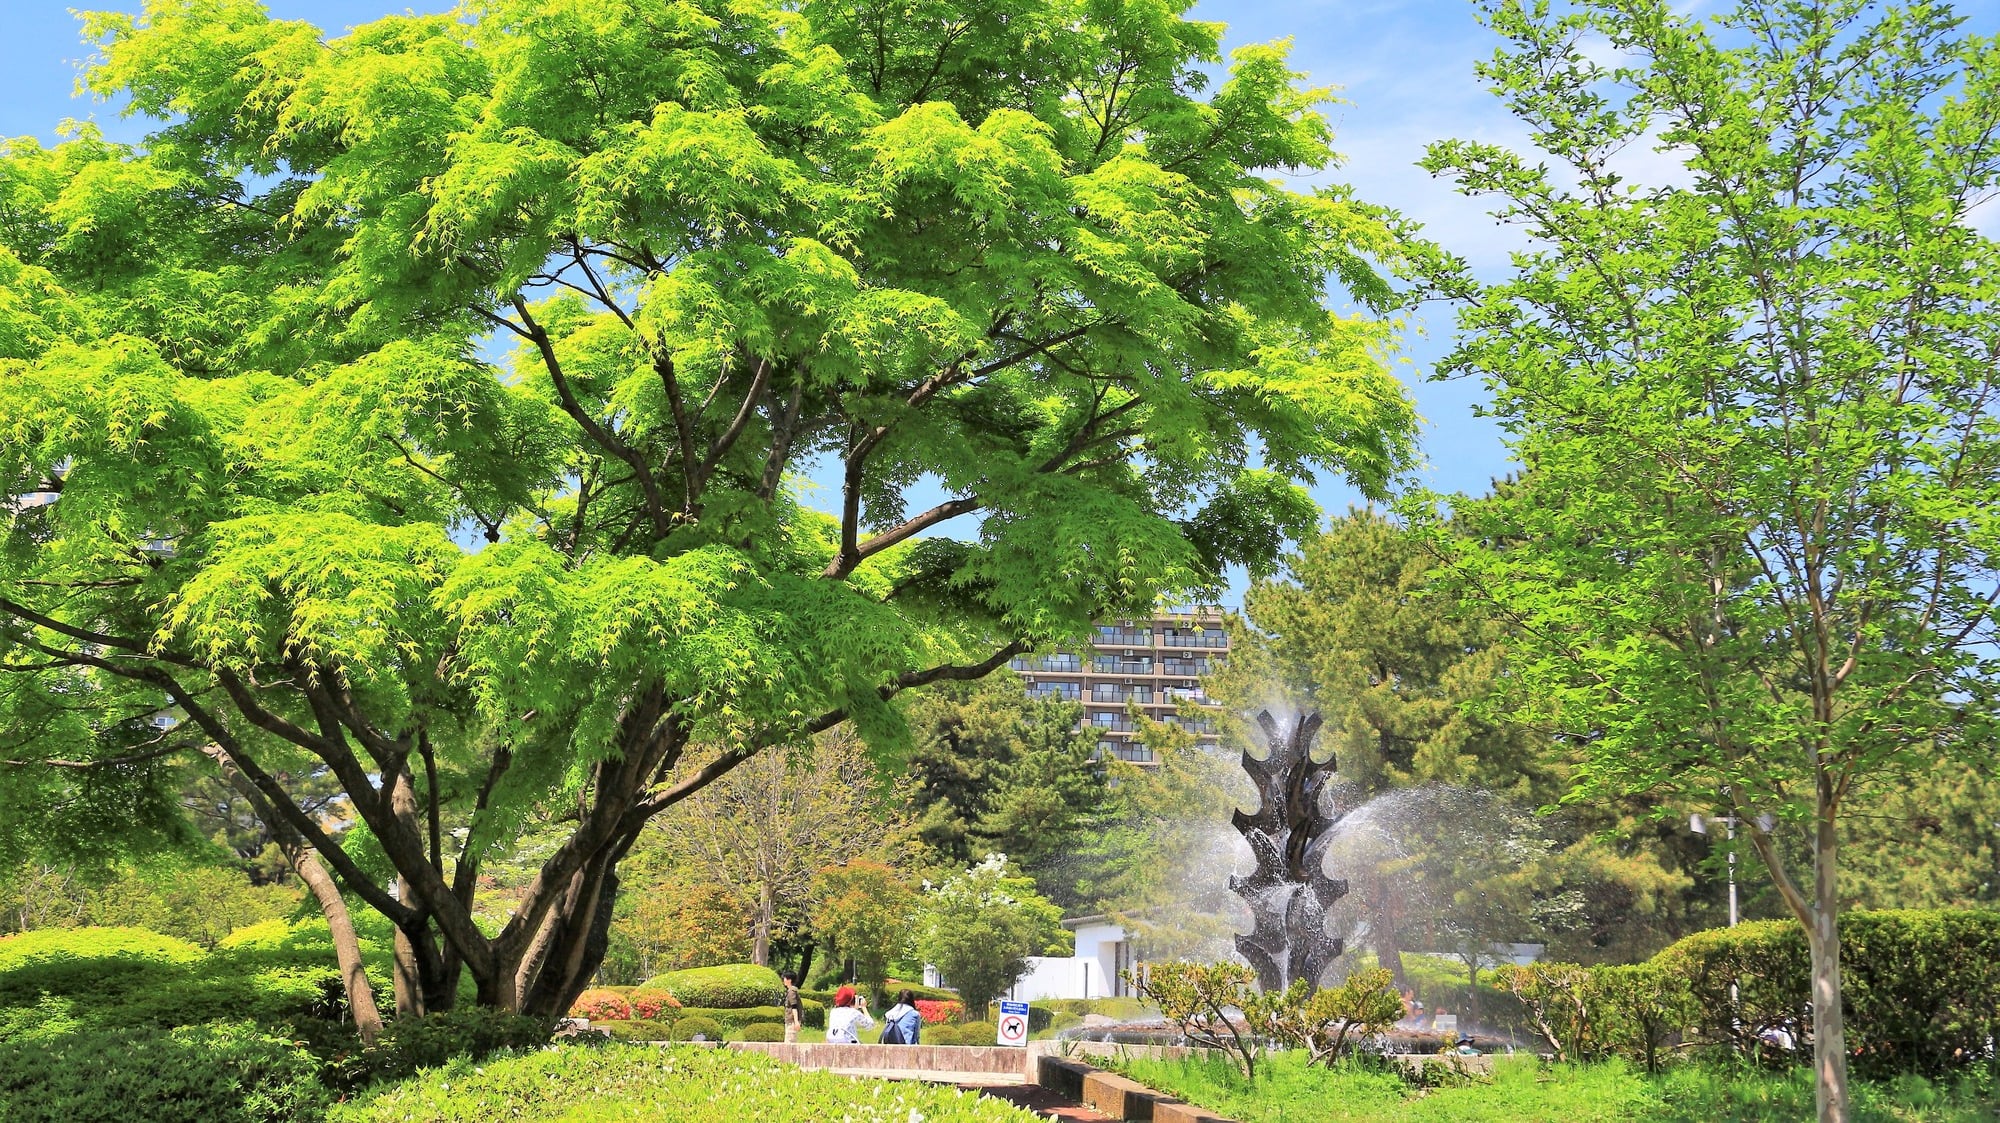 仙台市街の桜の名所 榴岡公園のおすすめポイントをご紹介します Skyticket 観光ガイド